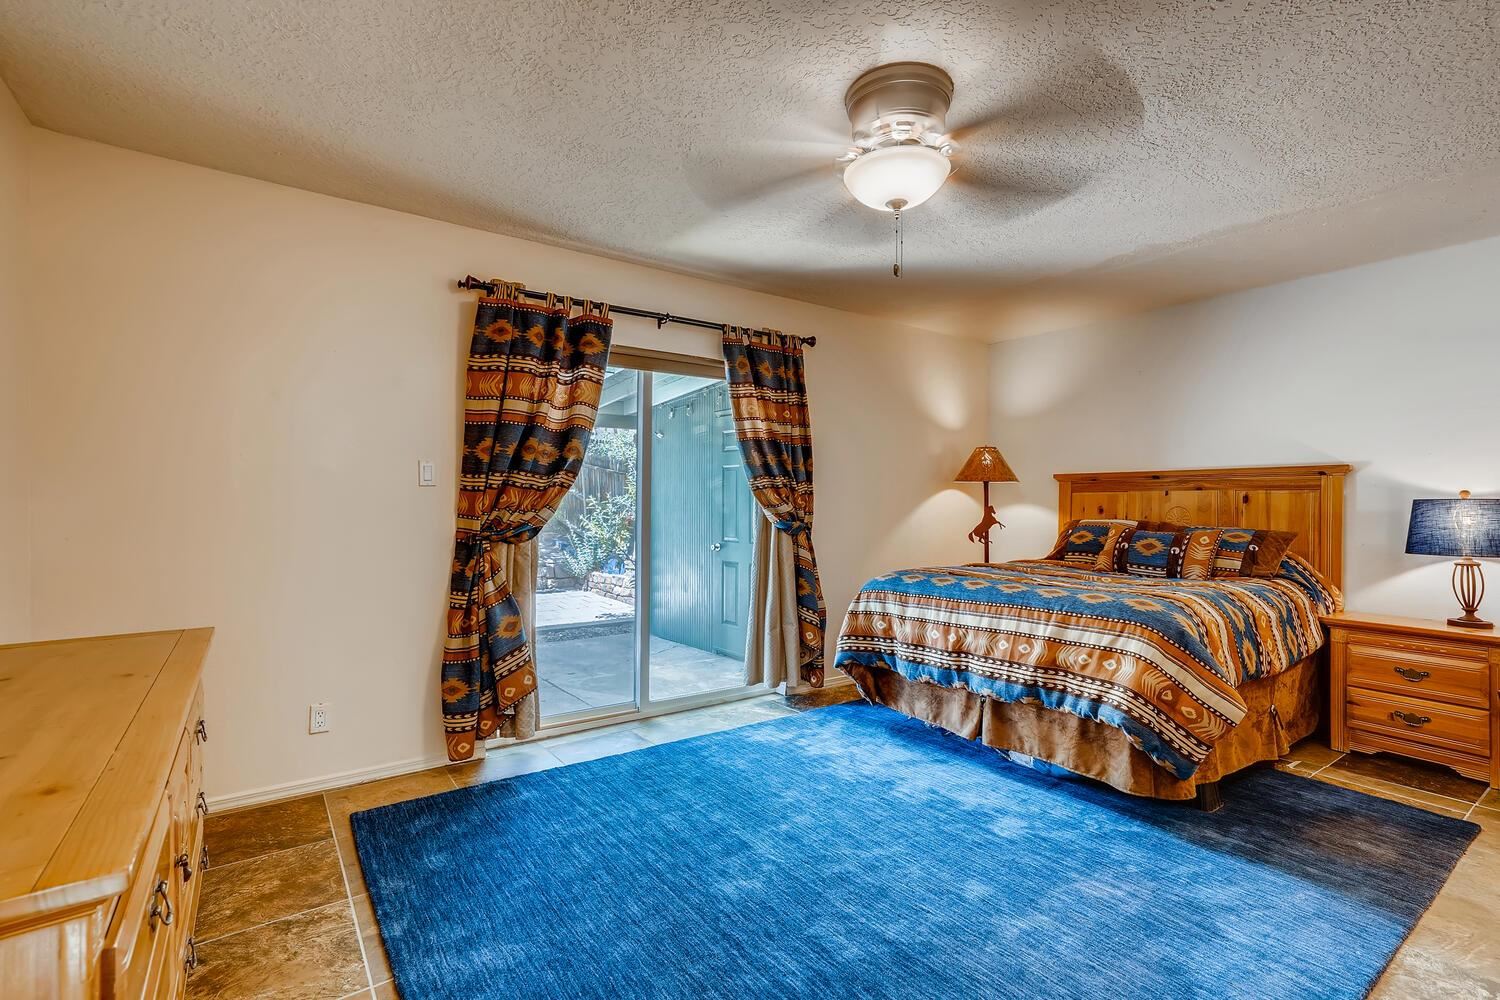 1543 Escondida, Santa Fe, New Mexico 87507, 3 Bedrooms Bedrooms, ,2 BathroomsBathrooms,Residential,For Sale,1543 Escondida,202102460